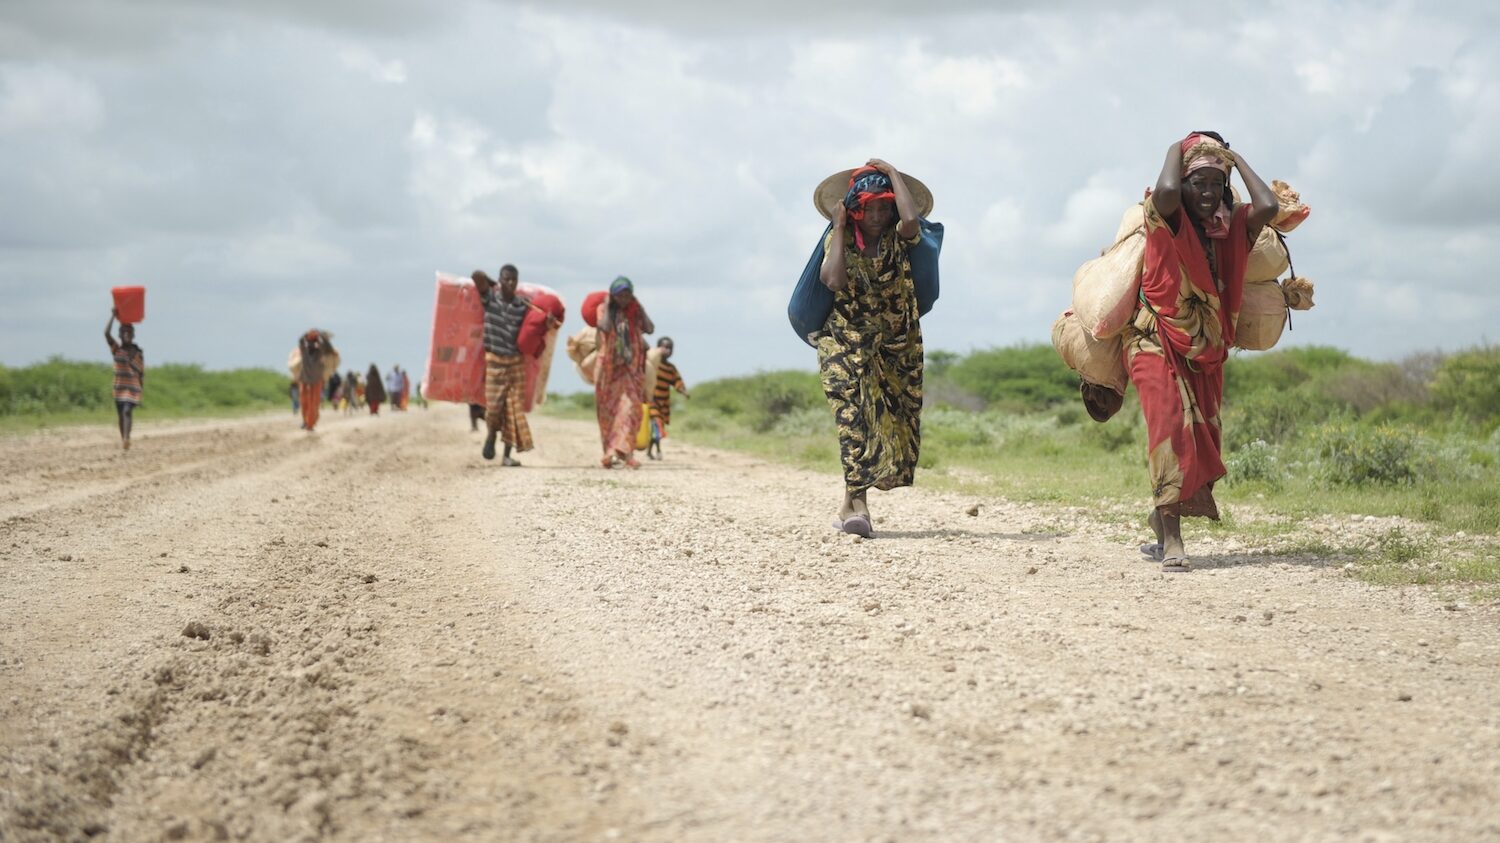 Bruno Conte escriu sobre el canvi climàtic i la migració a l'Àfrica Subsahariana